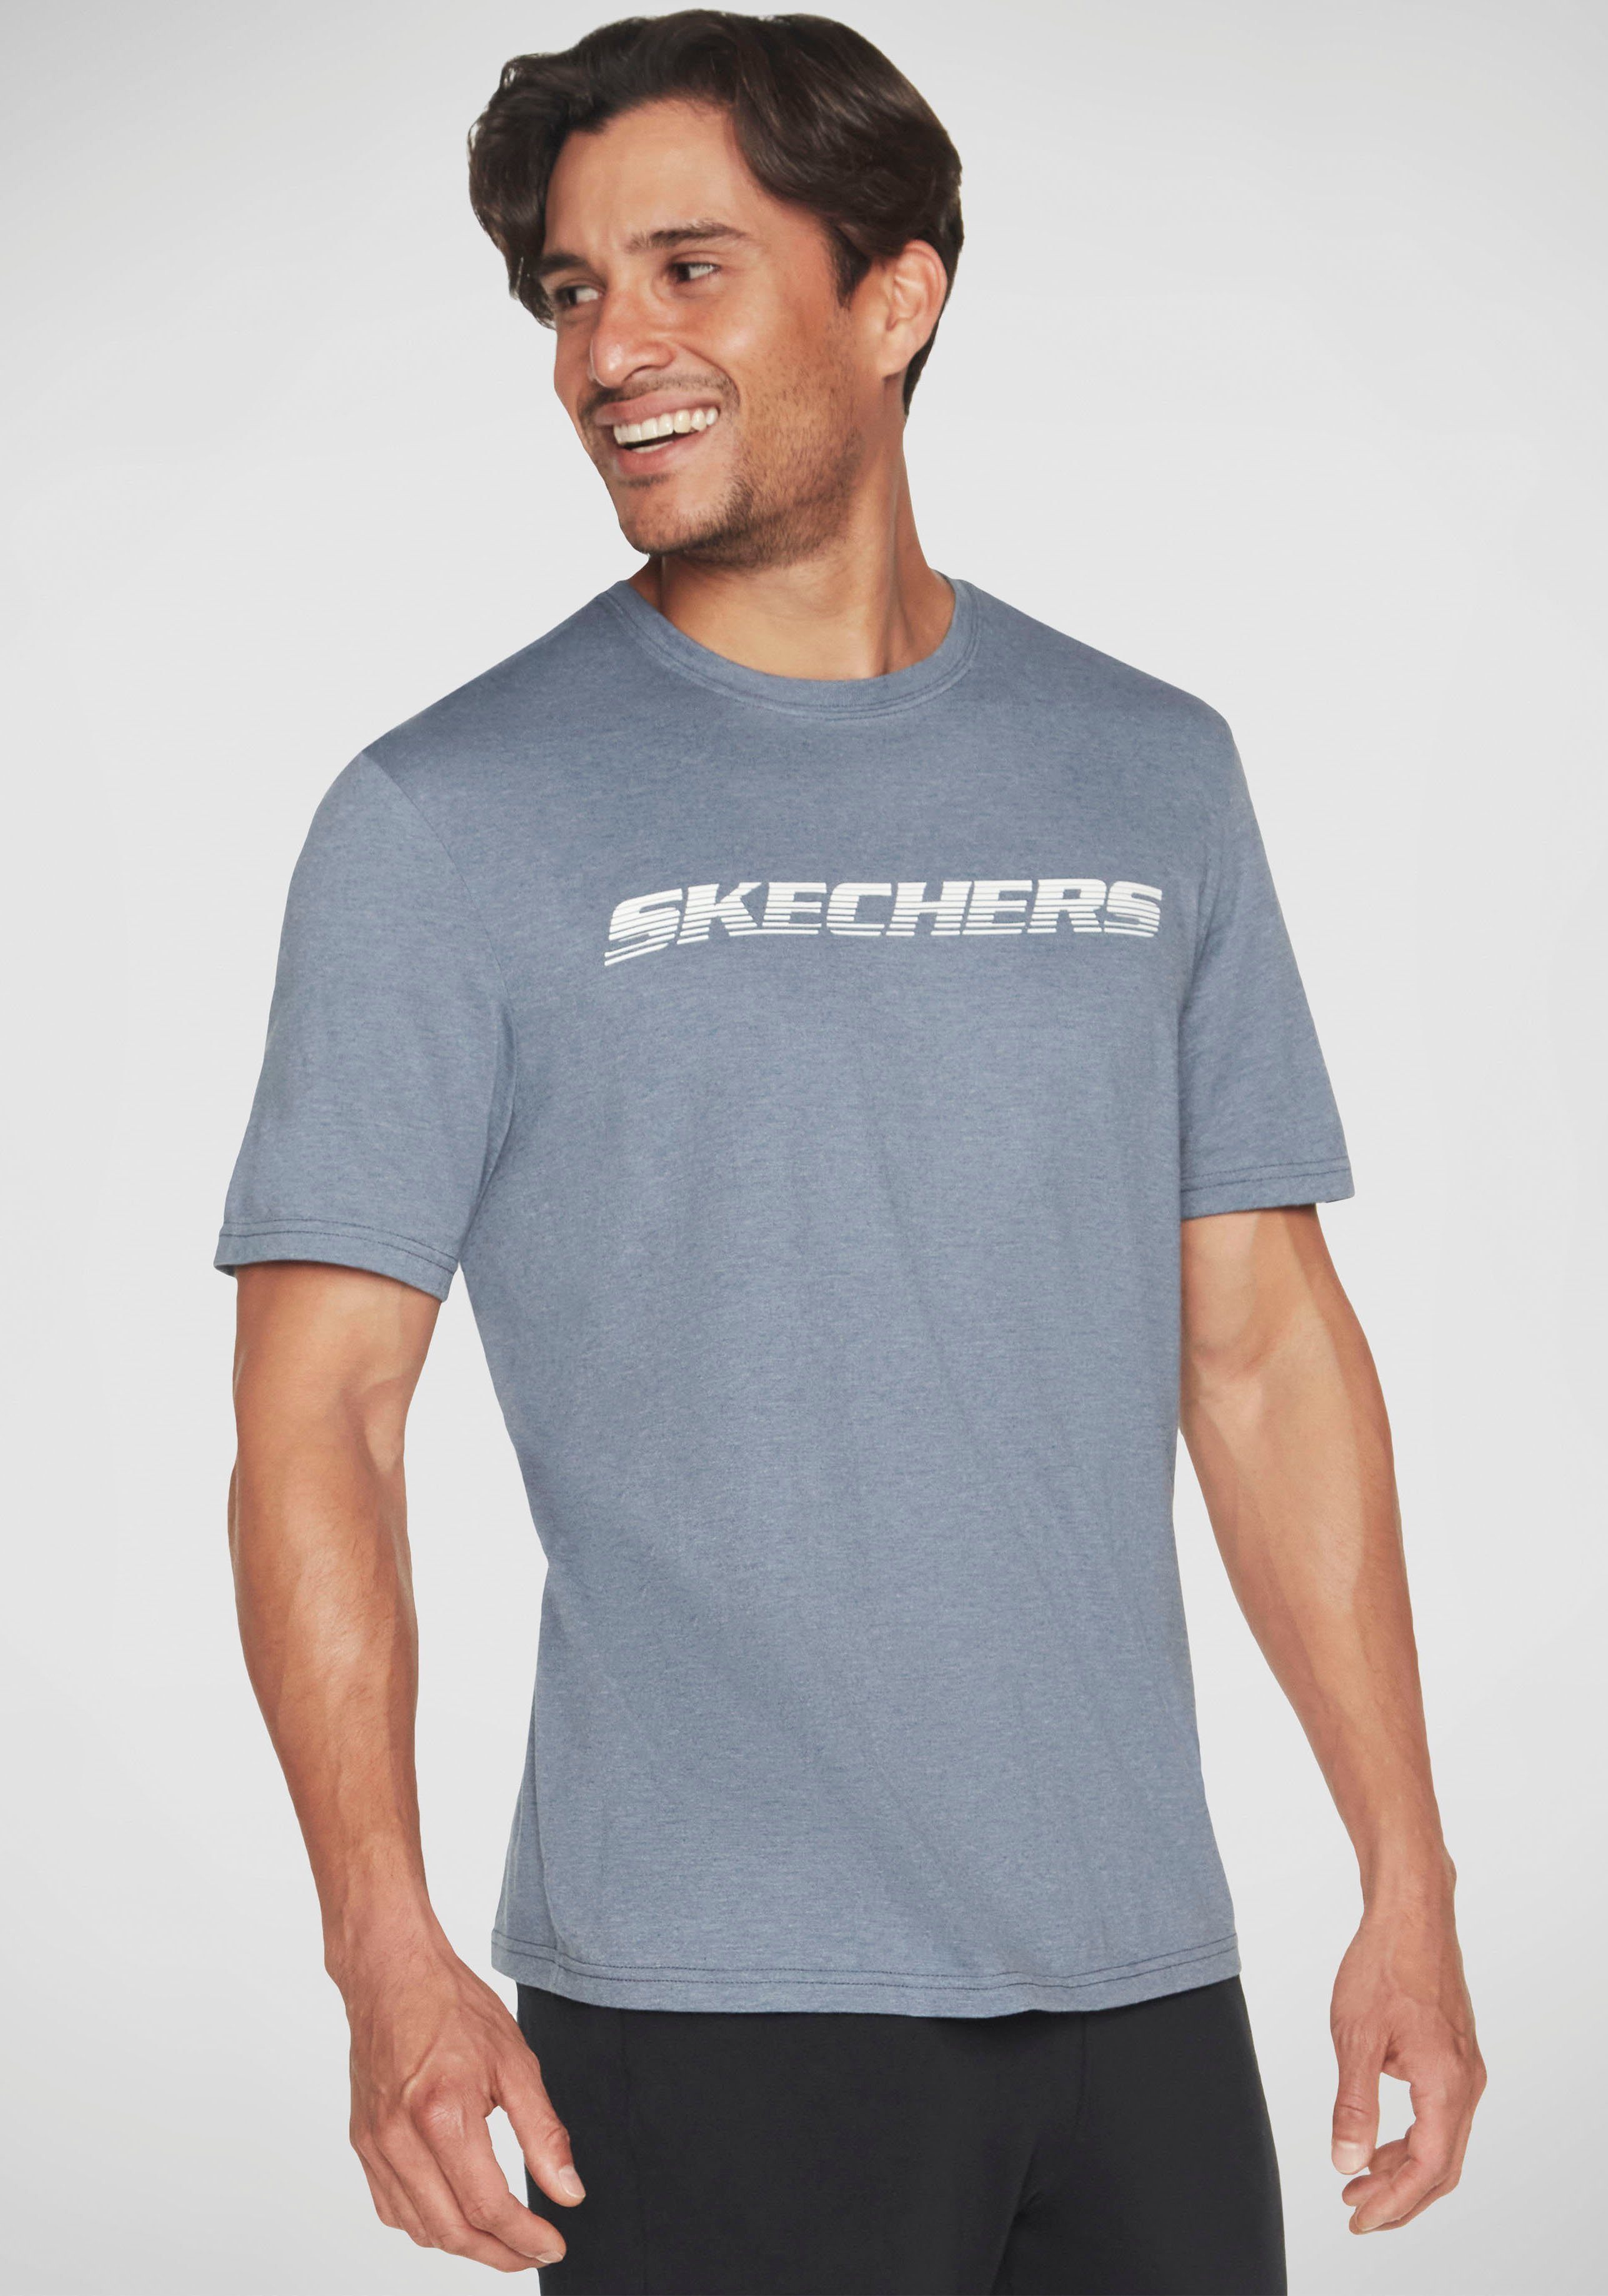 blaugrau T-Shirt TEE Skechers MOTION